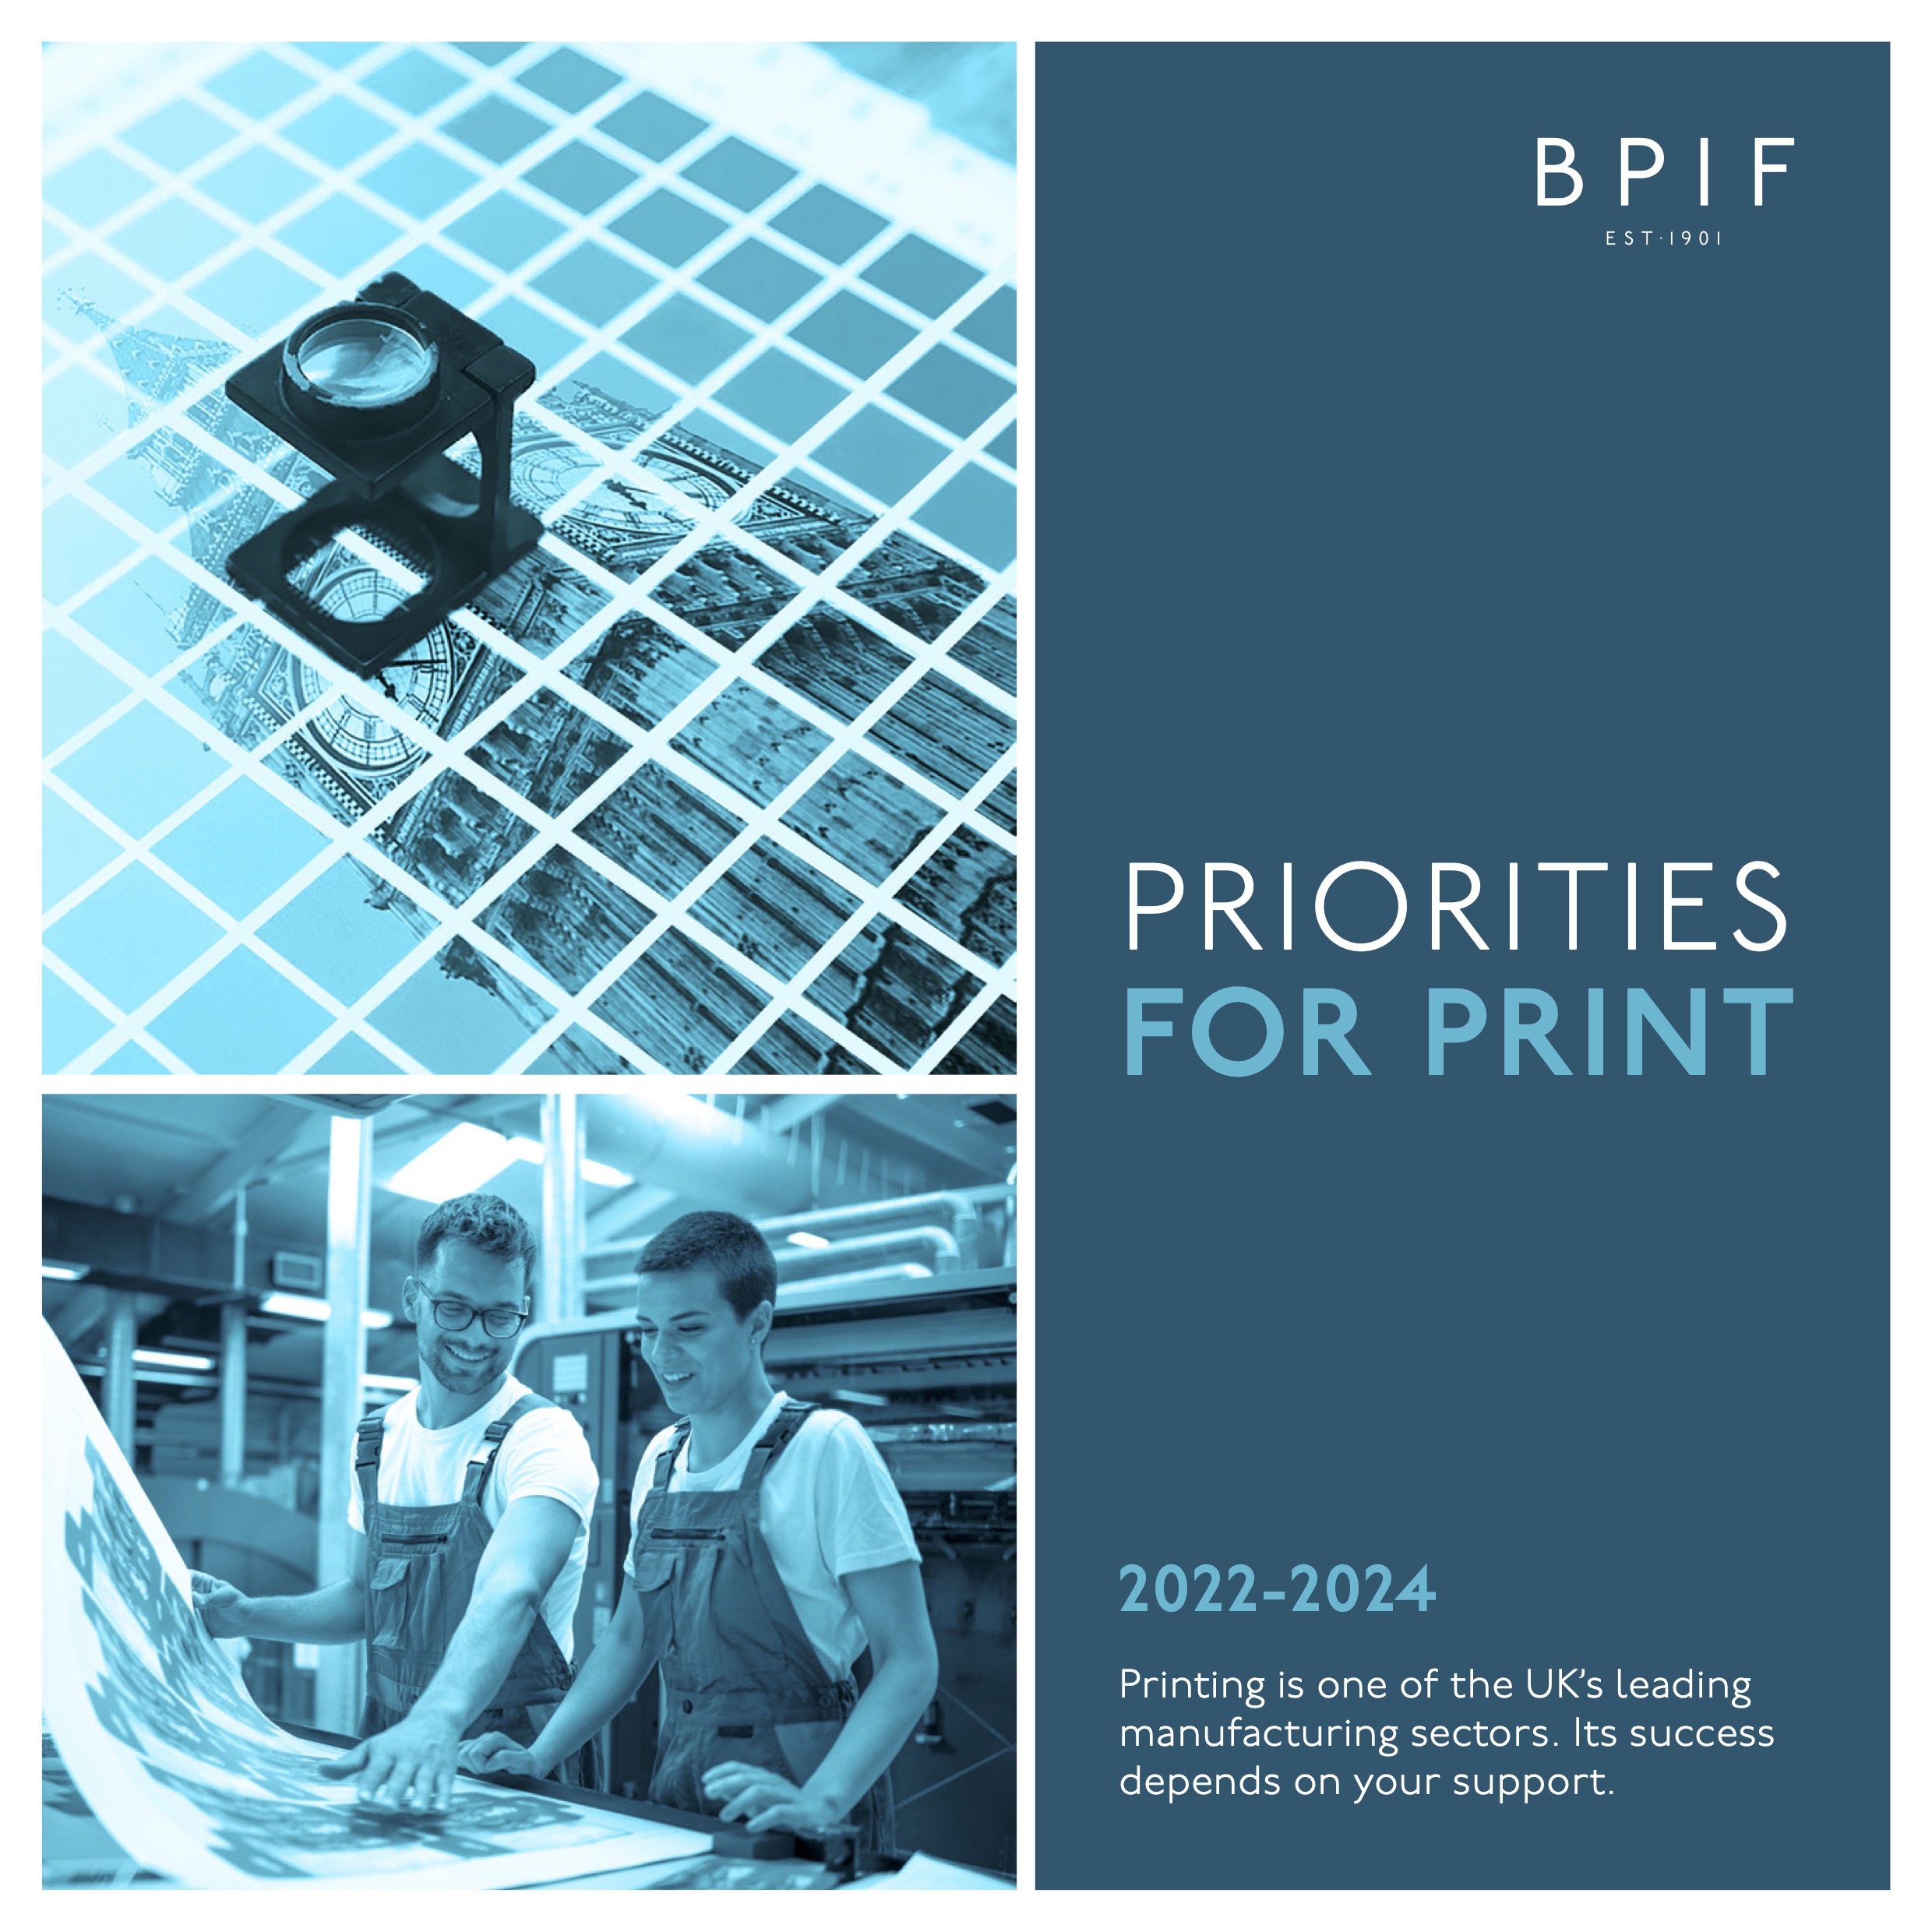 Priorities for Print 2022 - 2024